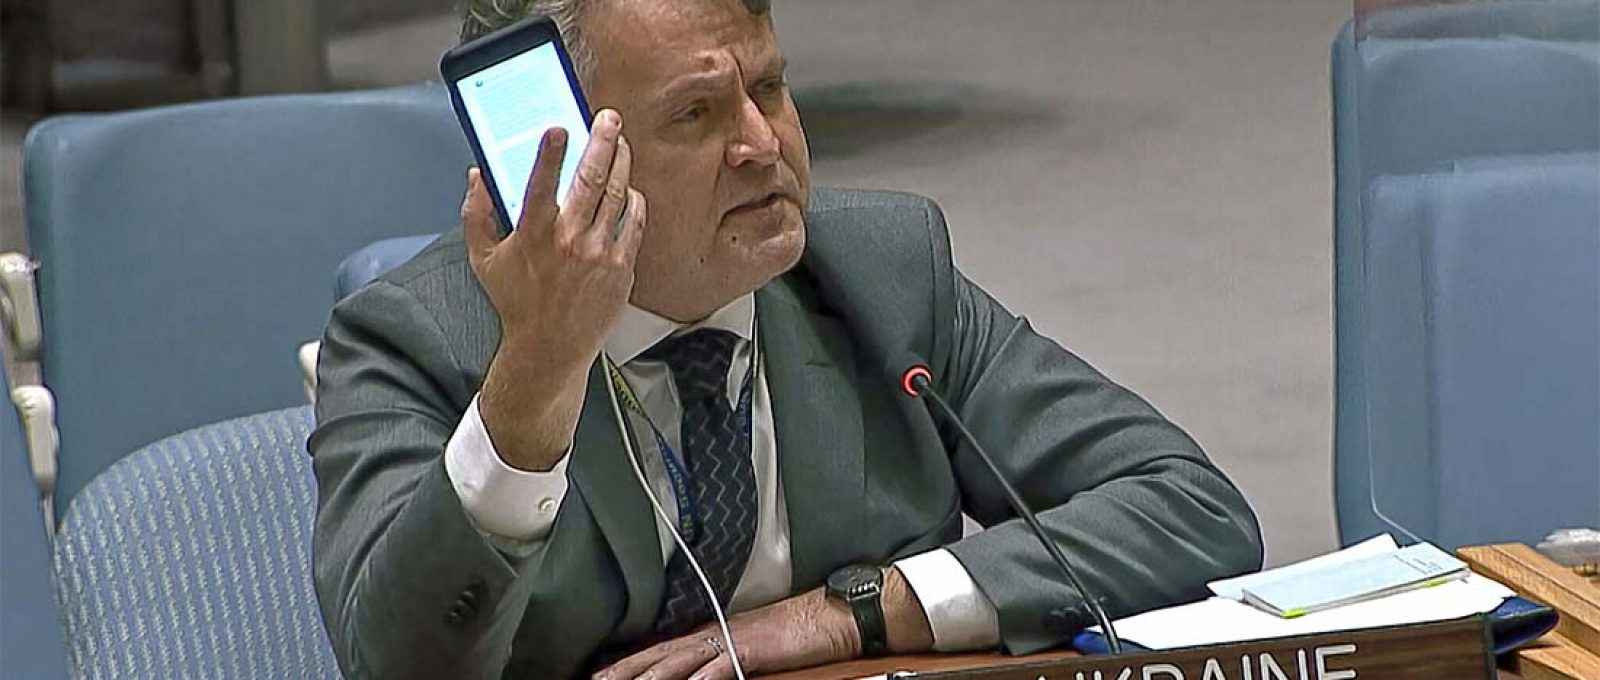 O embaixador da Ucrânia nas Nações Unidas, Sergiy Kyslytsya, segura um telefone enquanto fala em uma reunião de emergência do Conselho de Segurança na sede da ONU, 23 de fevereiro de 2022 (UNTV via AP).